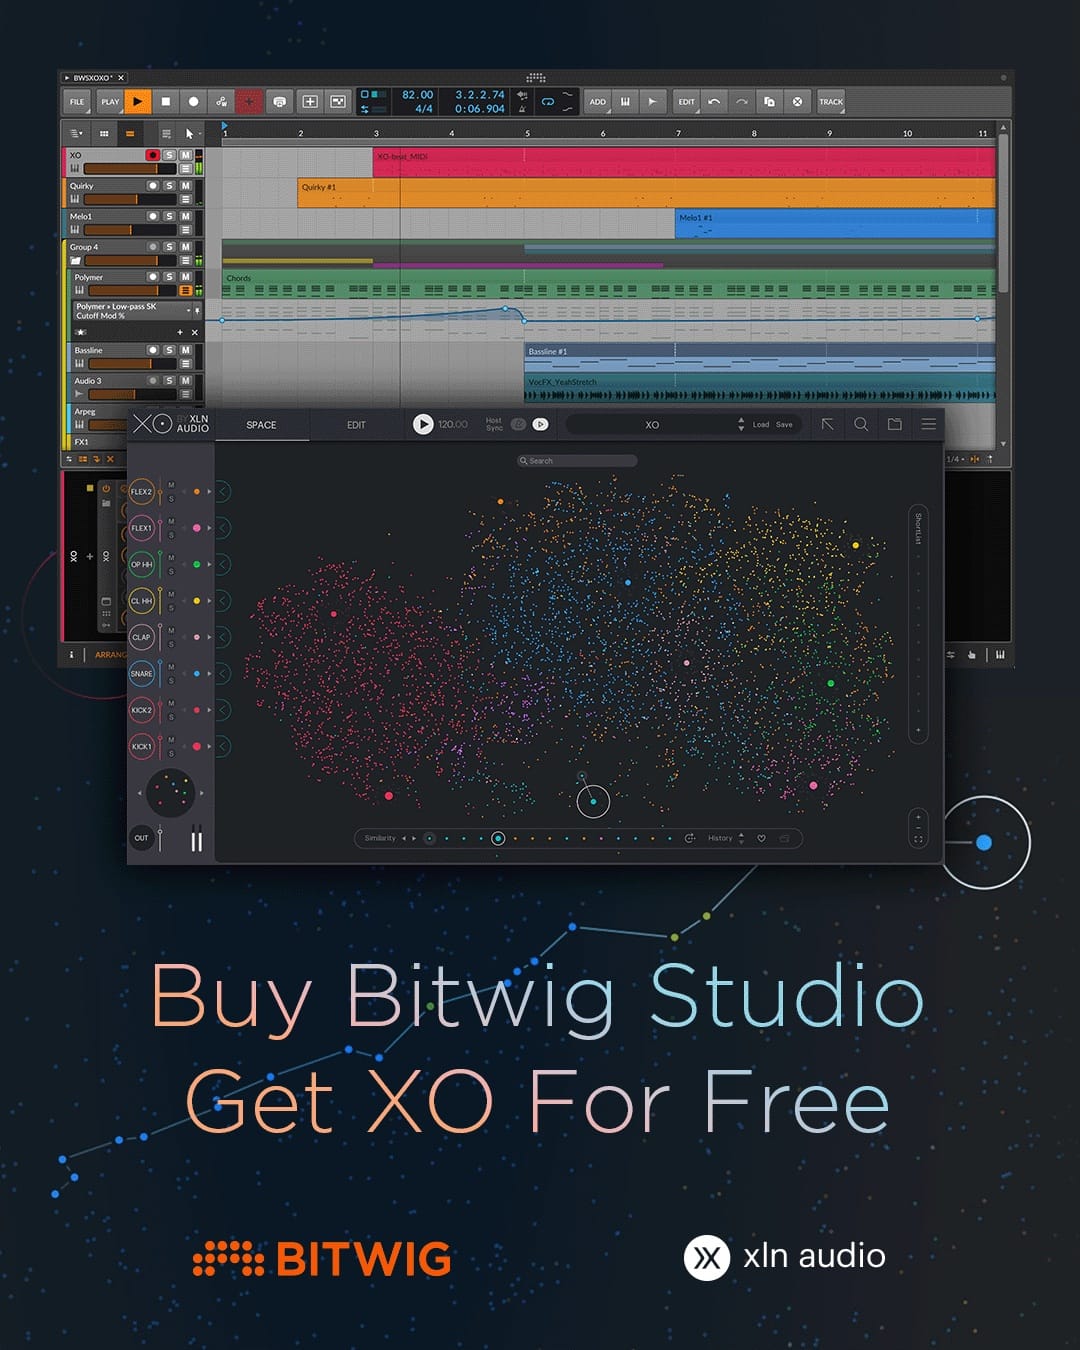 音楽制作ソフト「Bitwig Studio」購入者にビートメイクツール「XO」プレゼント